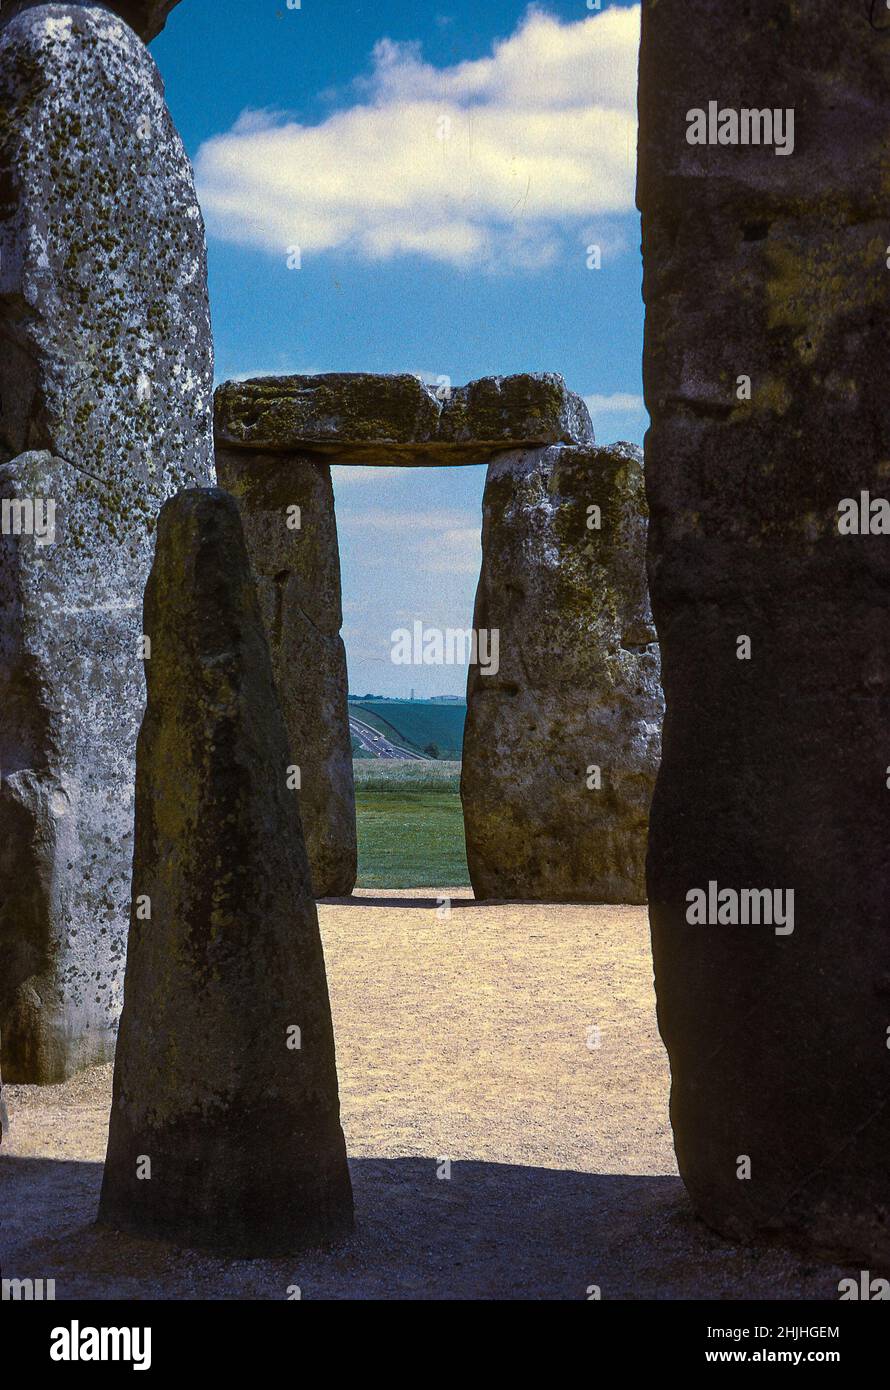 Stonehenge, ein prähistorischer Steinkreis in Wiltshire, England, wurde 1974 zum Weltkulturerbe erklärt. Der öffentliche Zugang wird nun viel strengerer verwaltet. Stockfoto